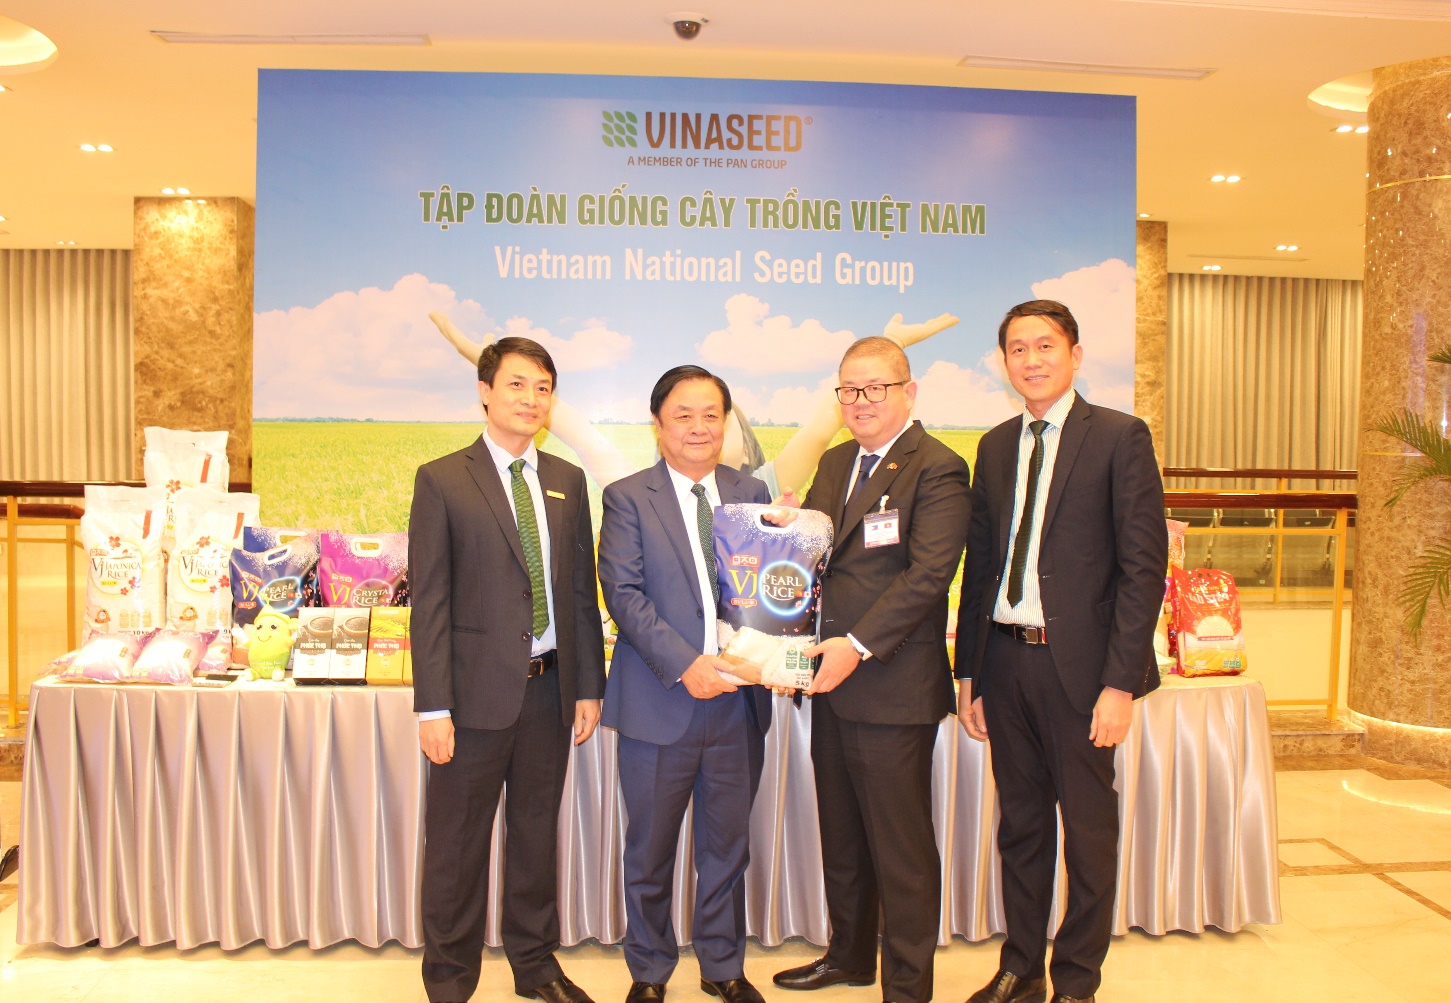 Philippines tiếp tục là thị trường xuất khẩu gạo lớn nhất của Việt Nam- Ảnh 4.